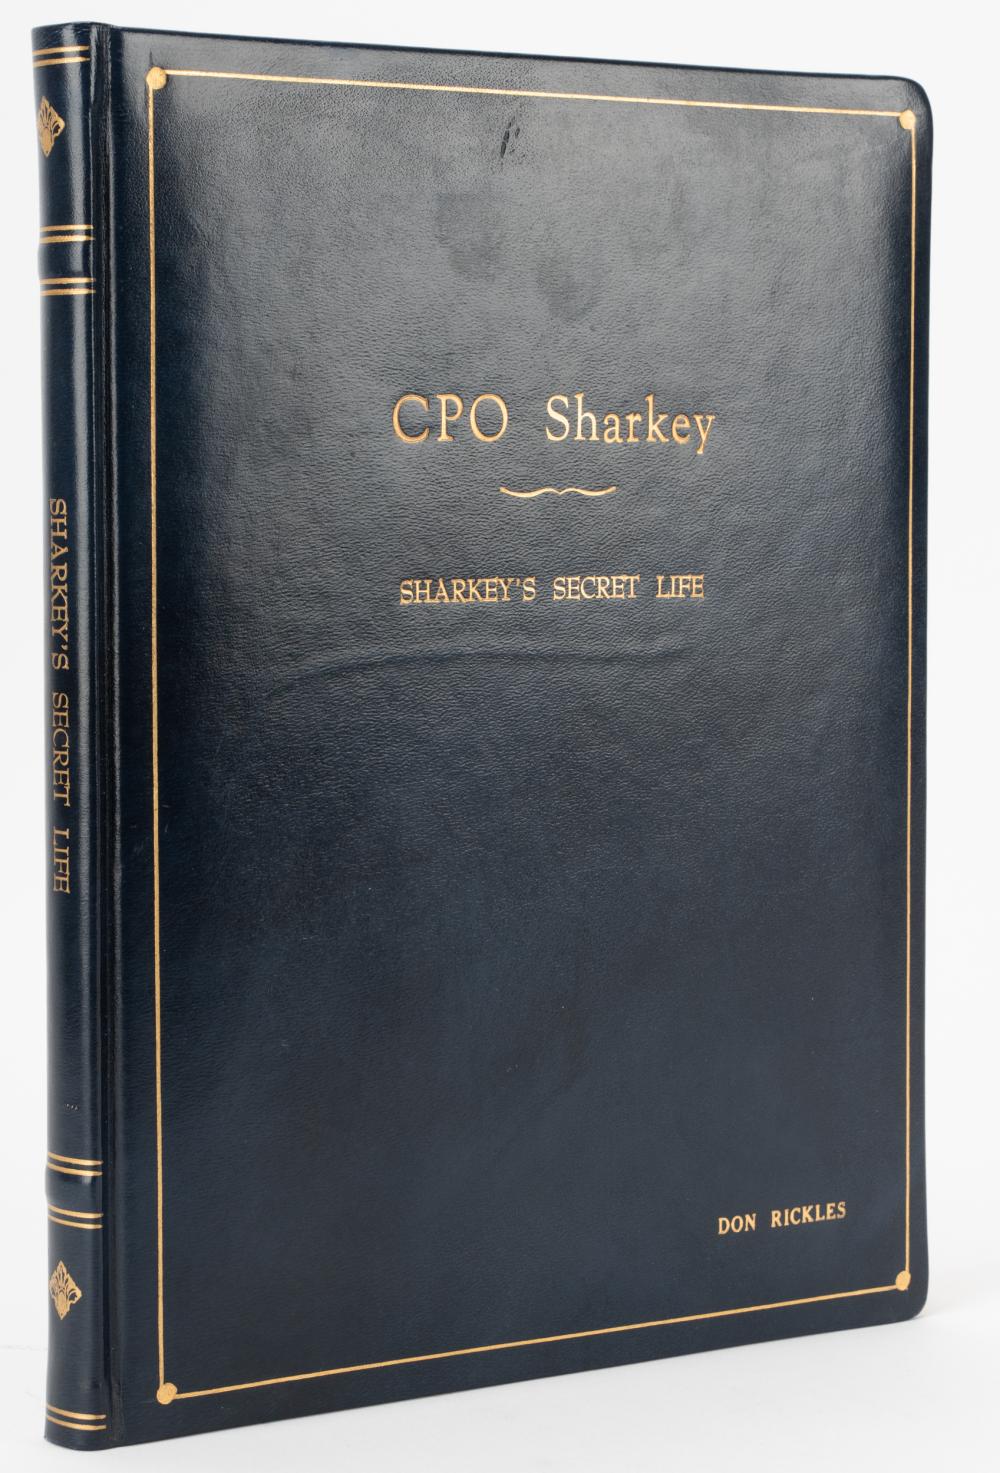 DON RICKLES: CPO SHARKEY SHARKEY'S